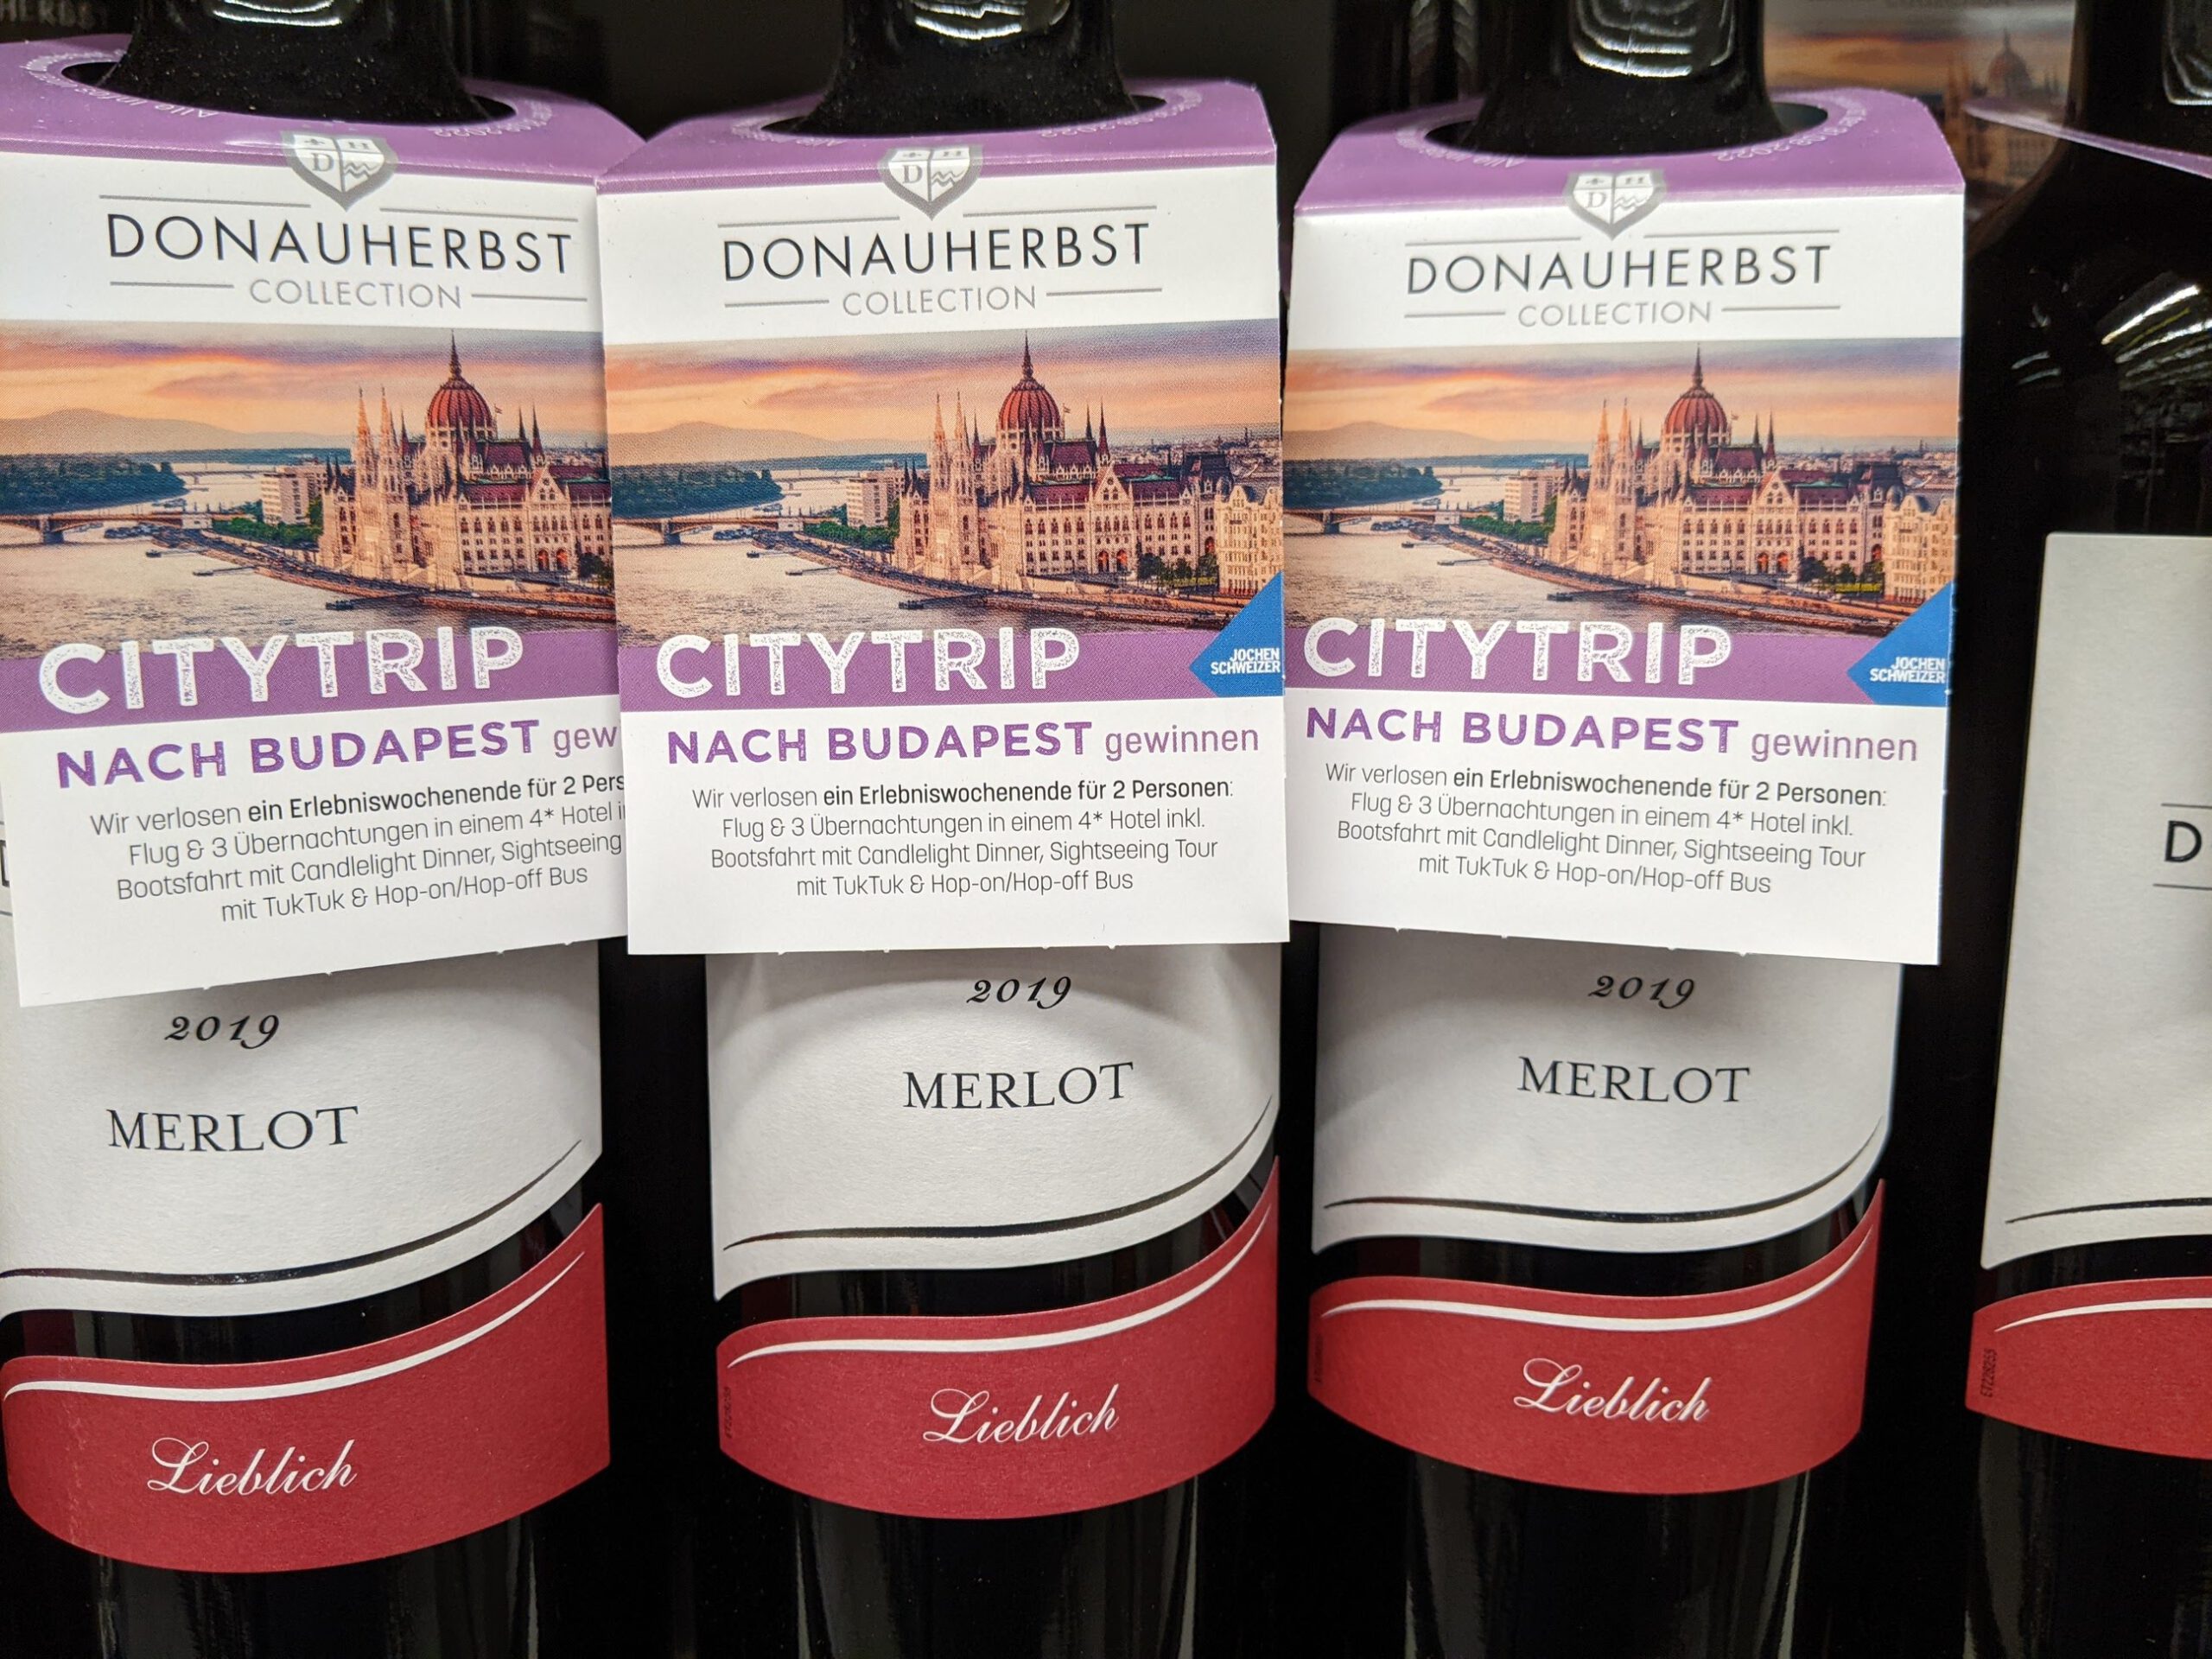 Donauherbst Collection Wein: Citytrip nach Budapest mit Jochen Schweizer gewinnen - Kassenbon hochladen